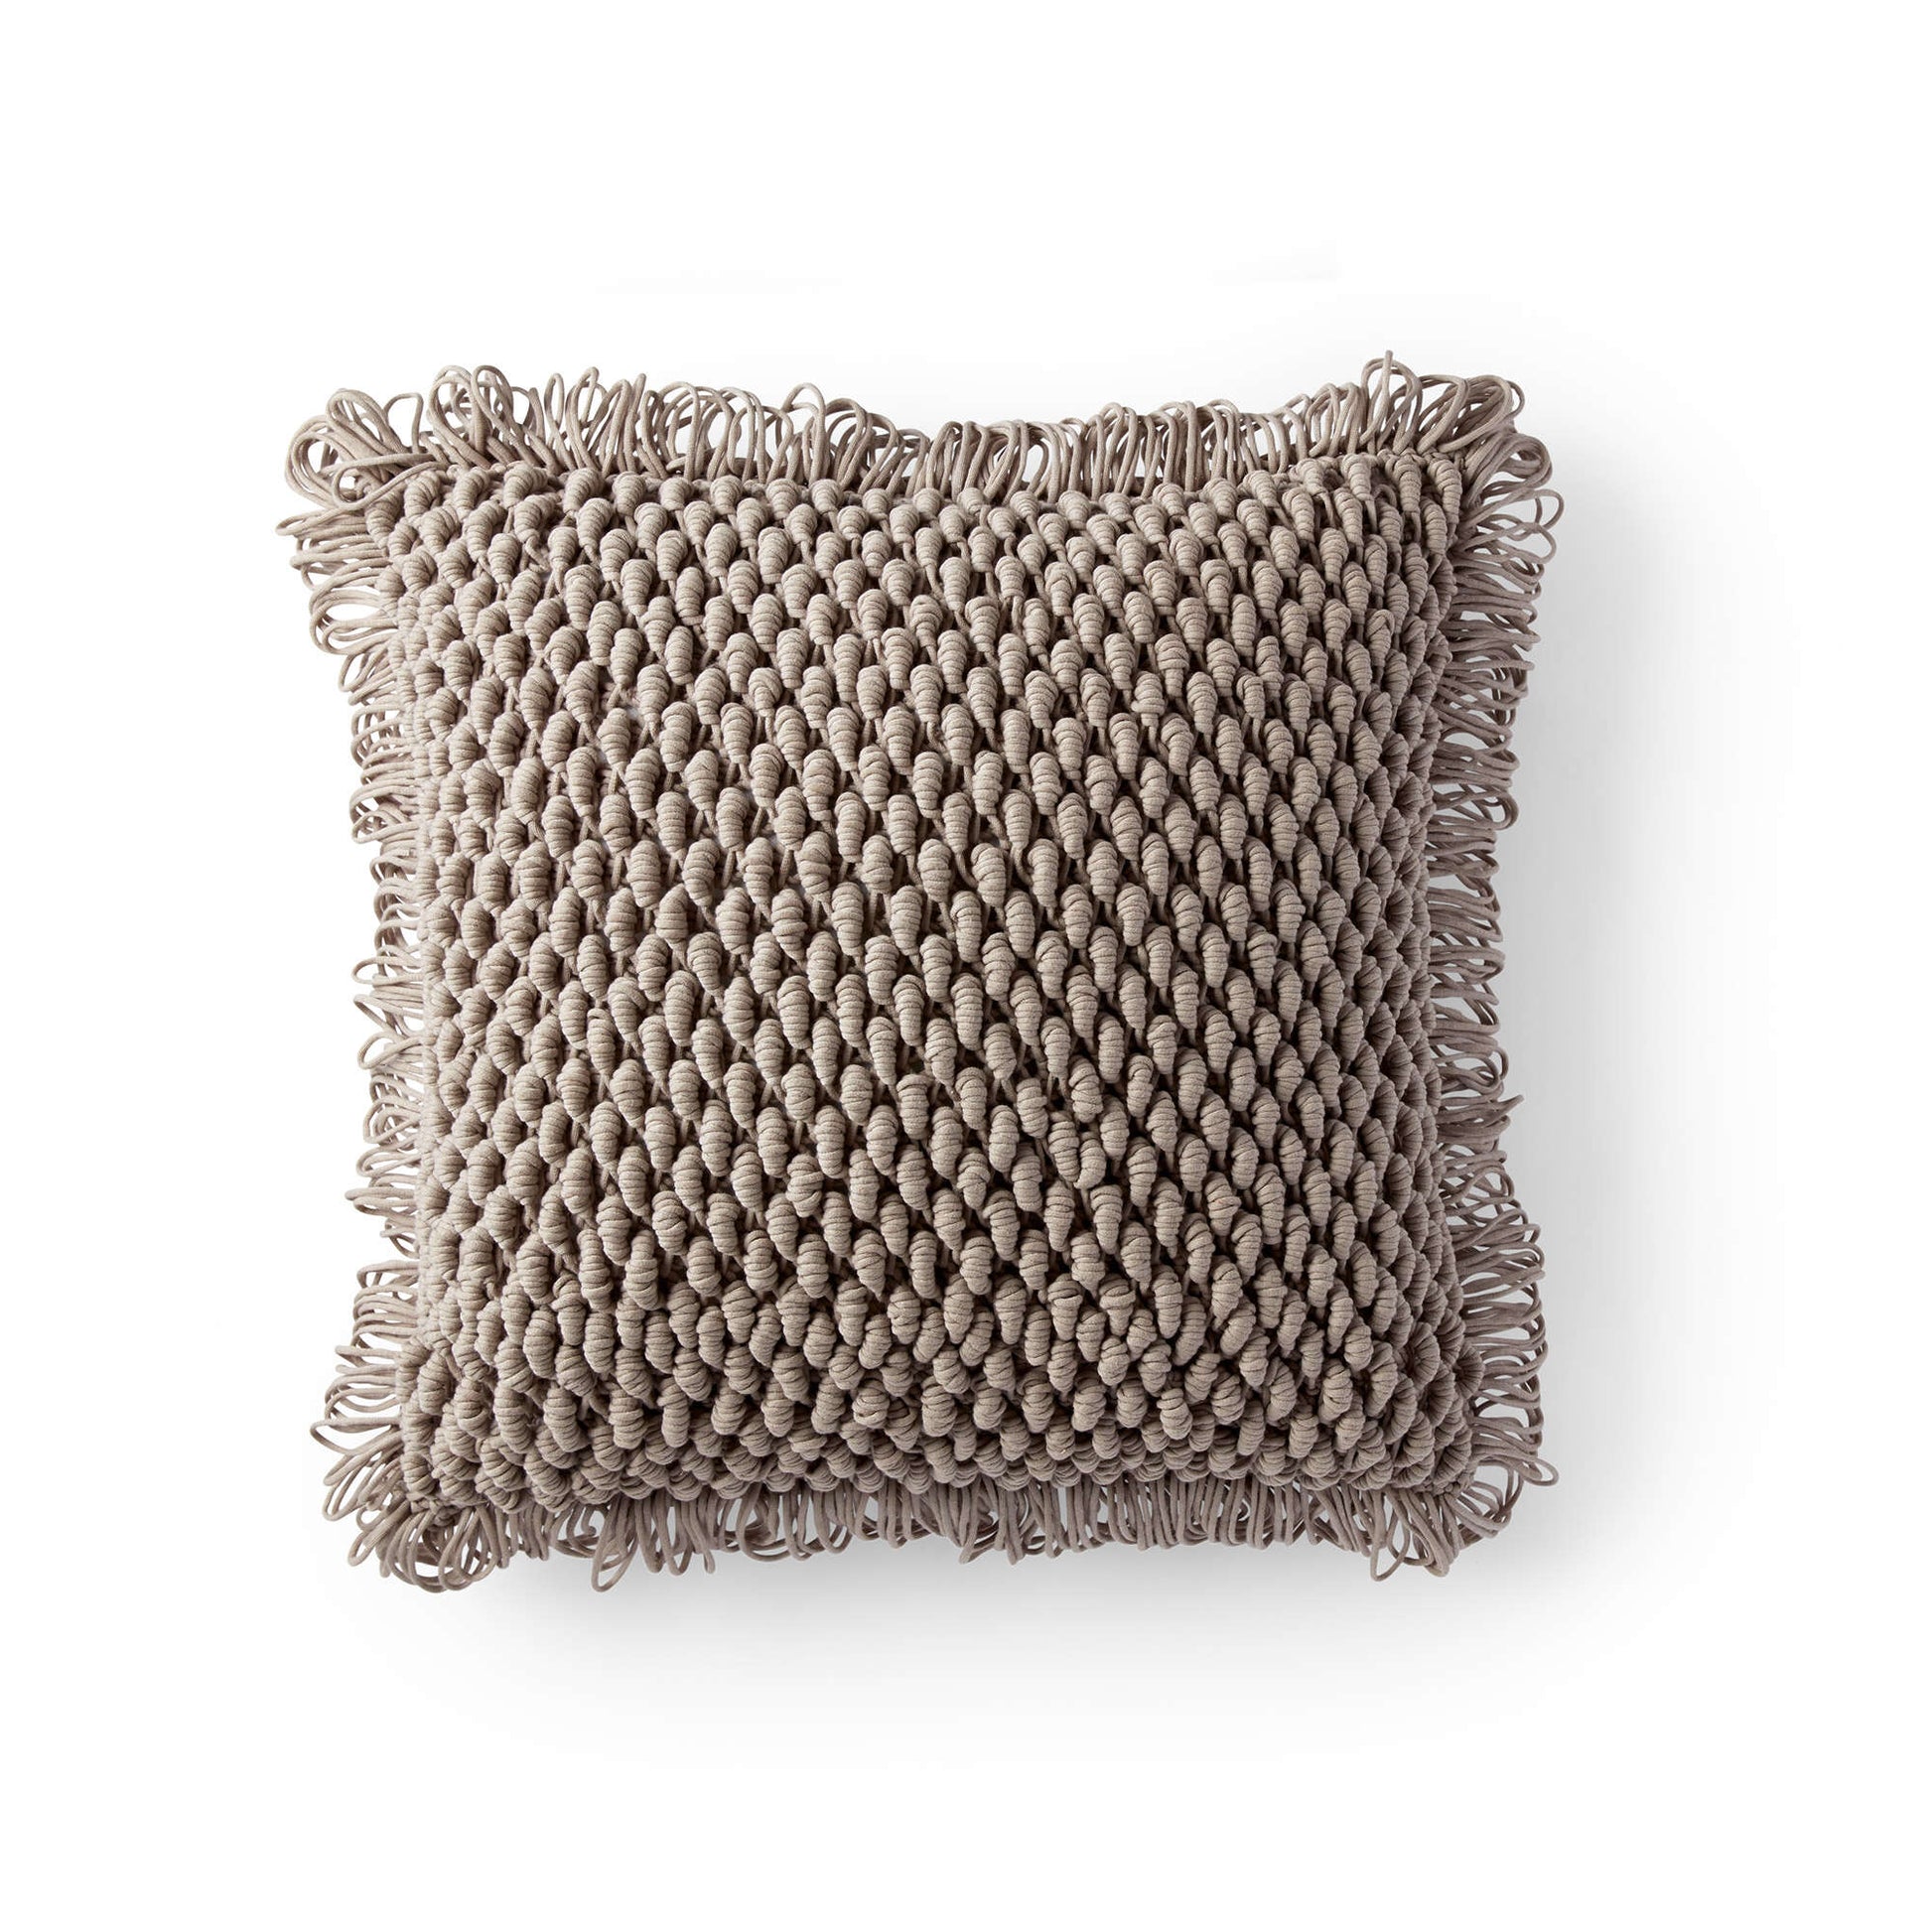 Free Bernat Bullion Loop Crochet Pillow Pattern